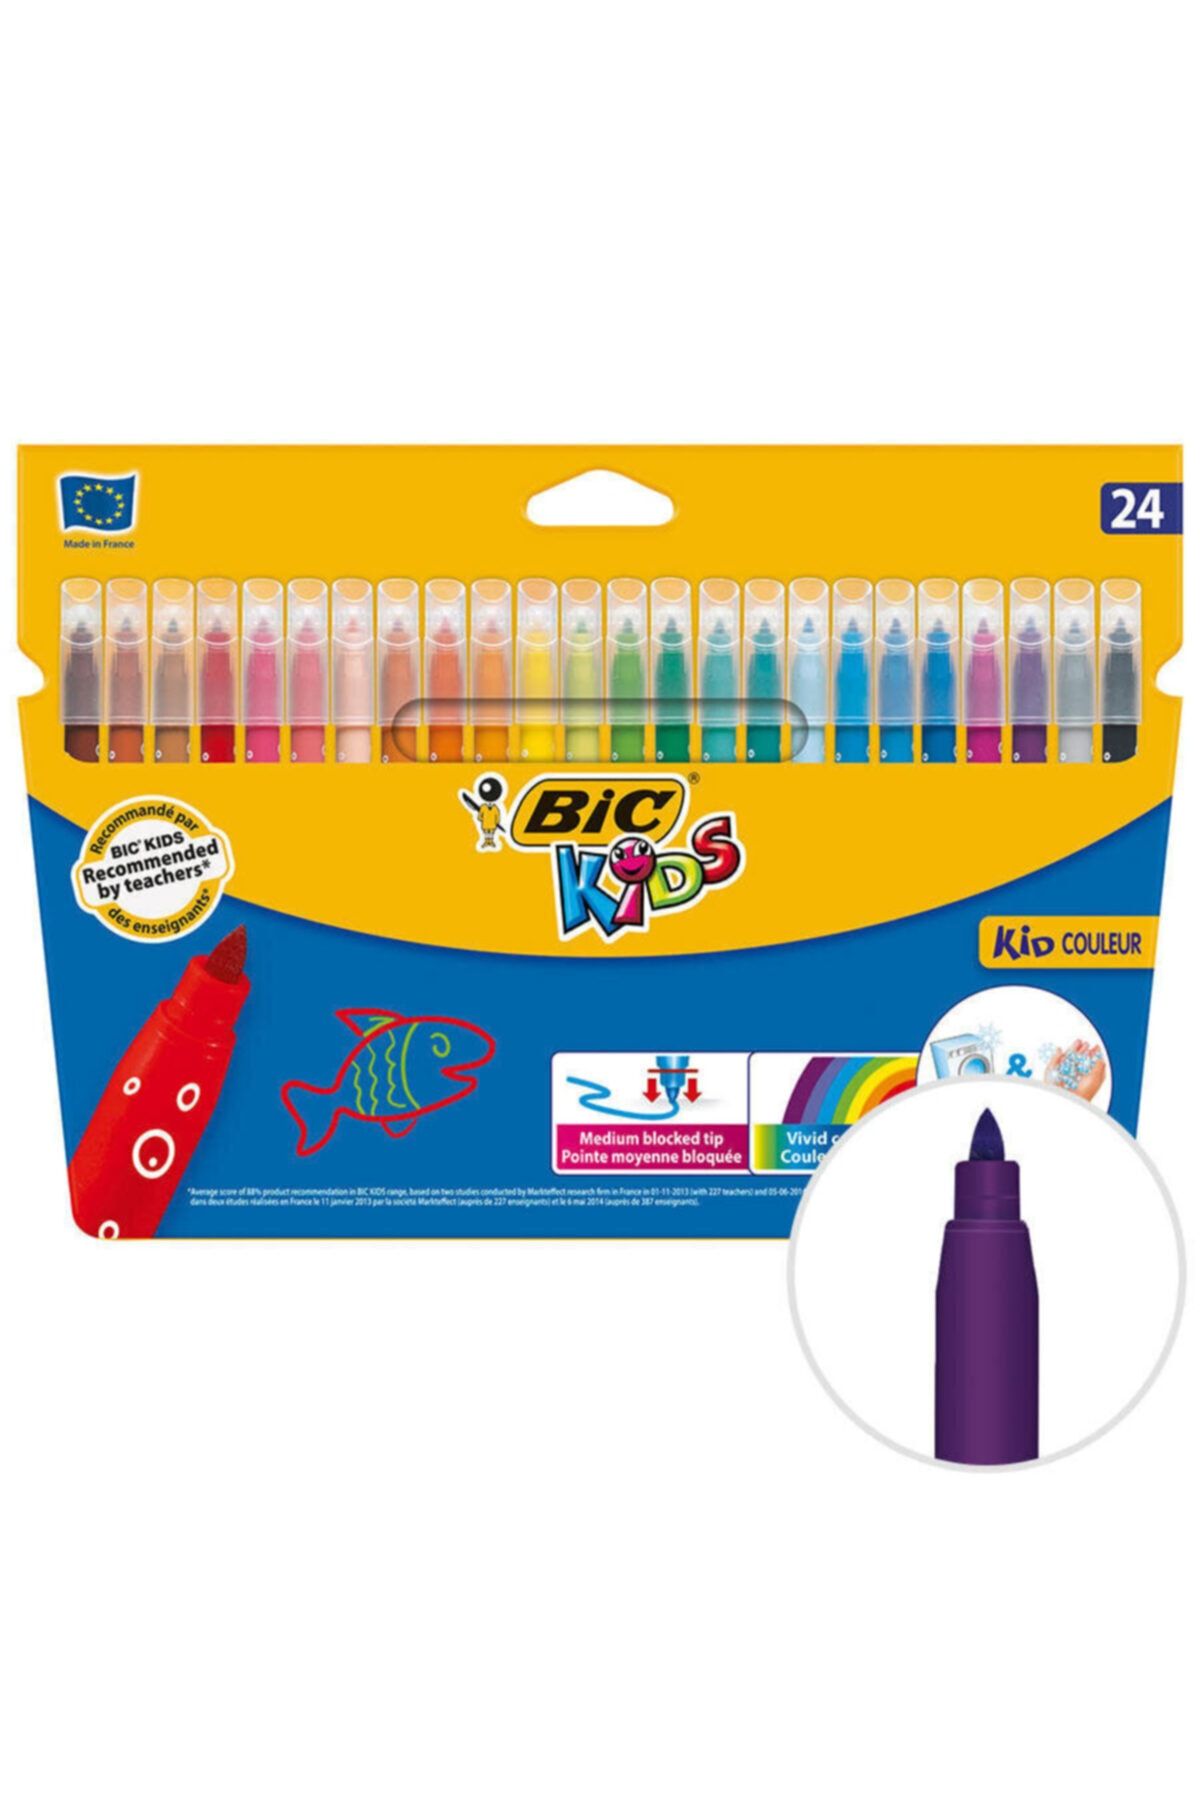 Bic Kids Couleur Keçeli Boya Kalemi 24 Renk (CİLTTEN VE KUMAŞTAN SU VE SABUNLA KOLAYCA ÇIKAR)